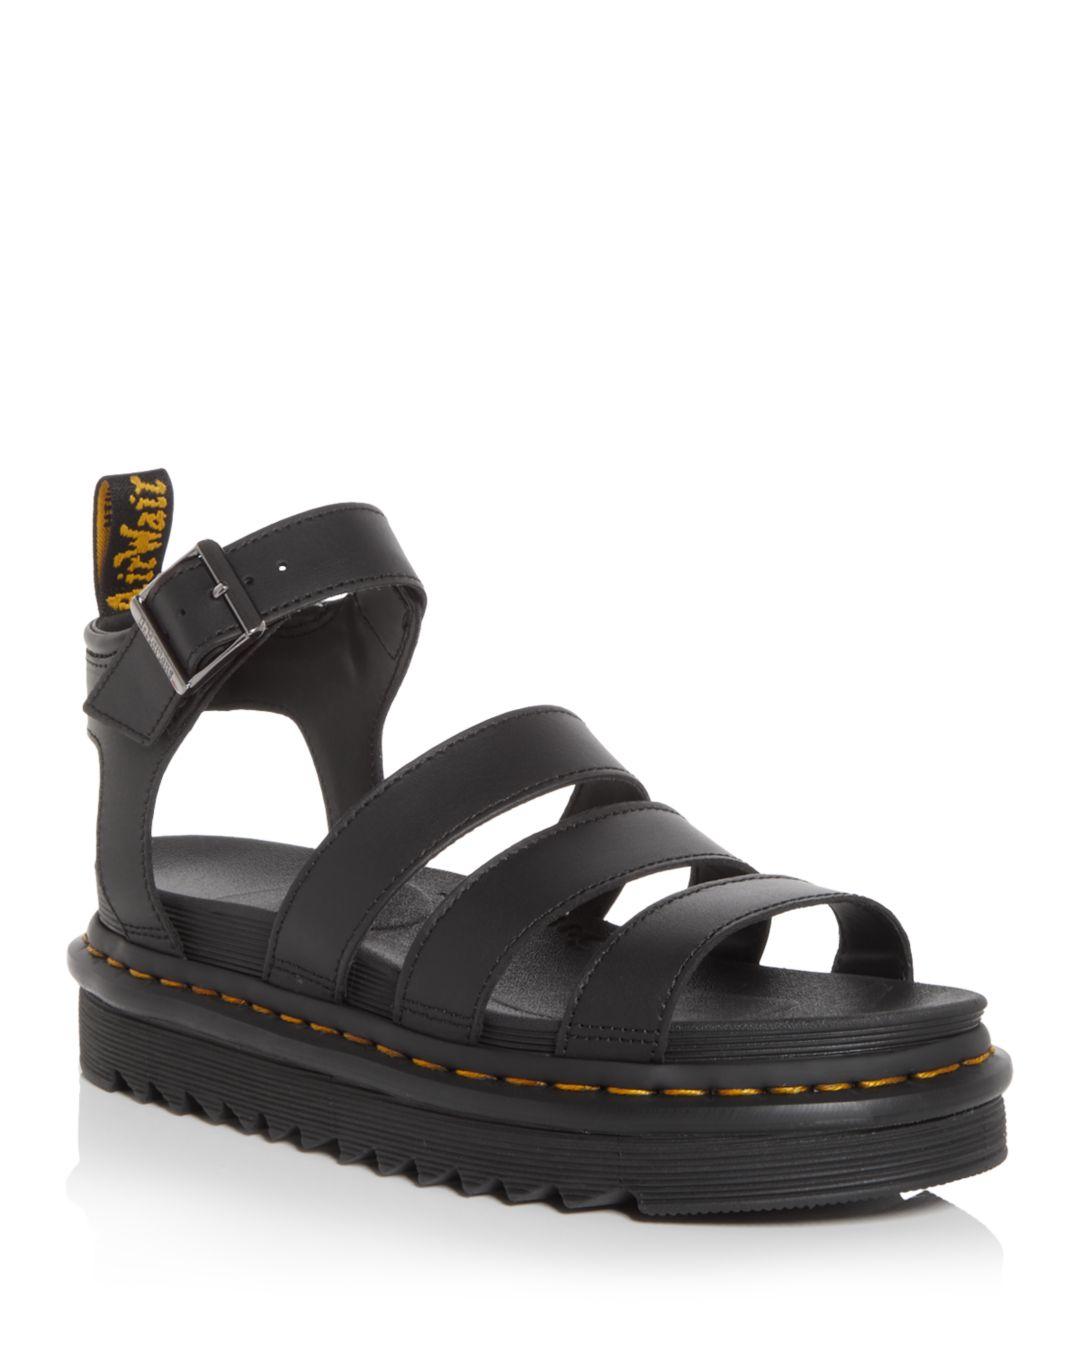 Dr. Martens Blaire Platform Gladiator Sandals in Black | Lyst